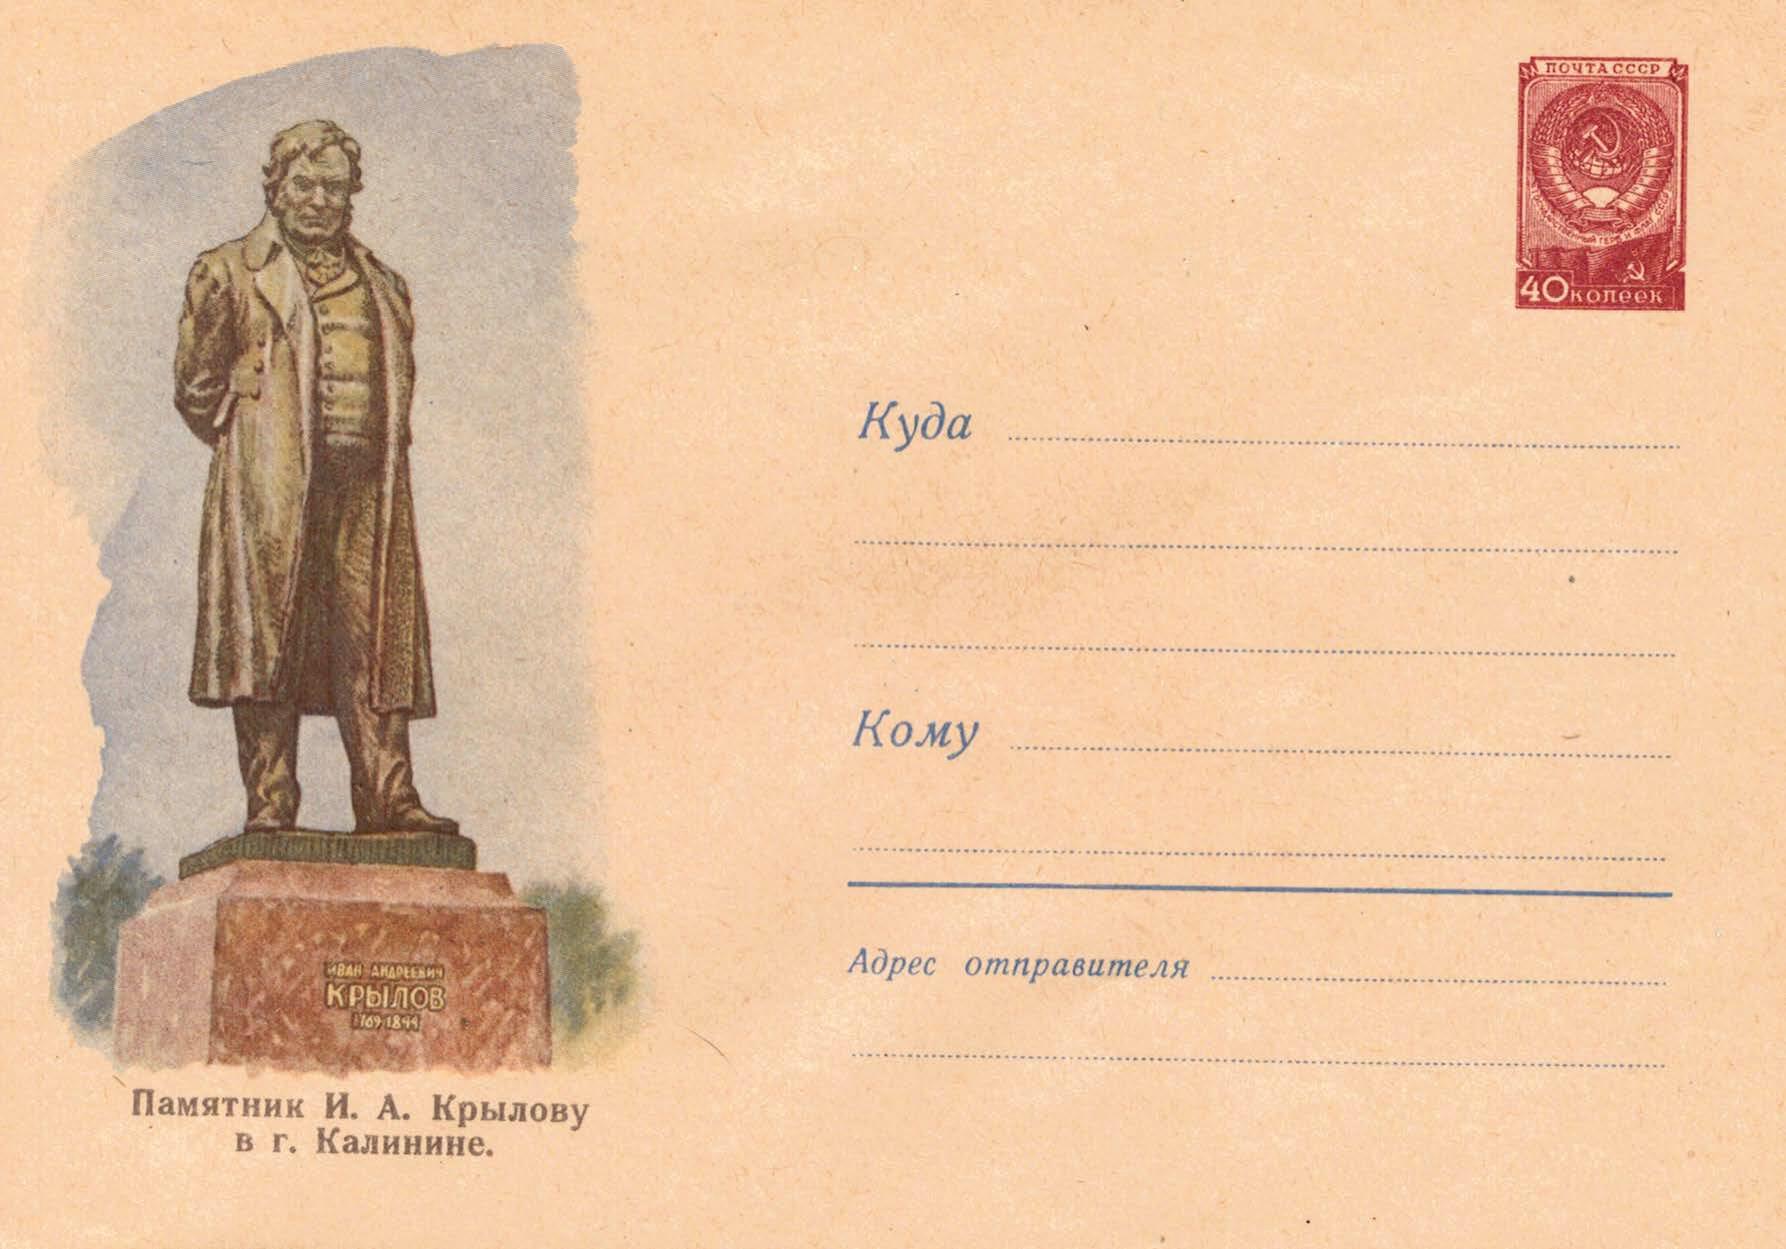 Krilov's monument in Kalinin